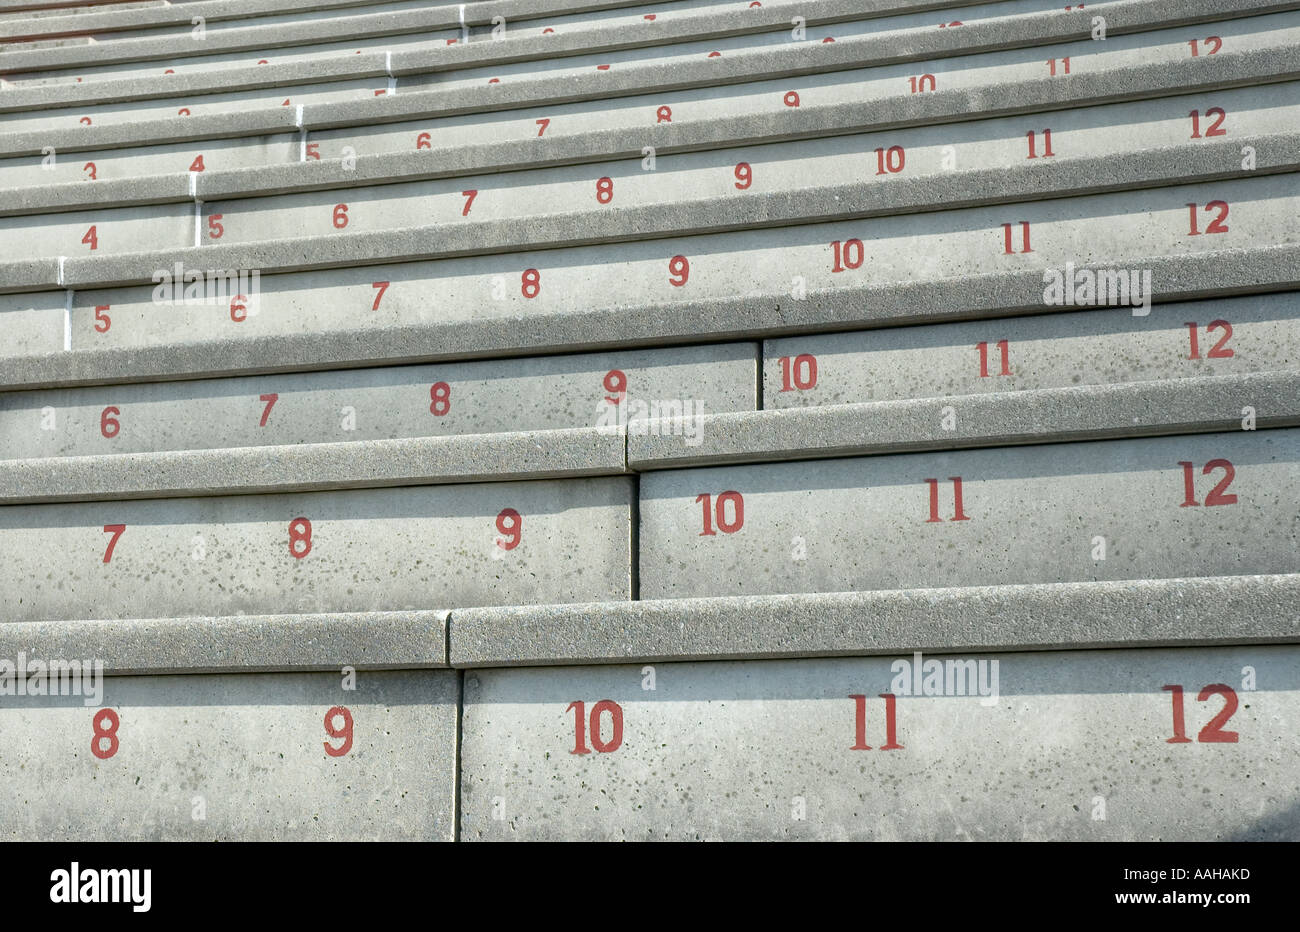 Les numéros de sièges du stade de Harvard, Harvard University, Cambridge, Massachusetts Banque D'Images